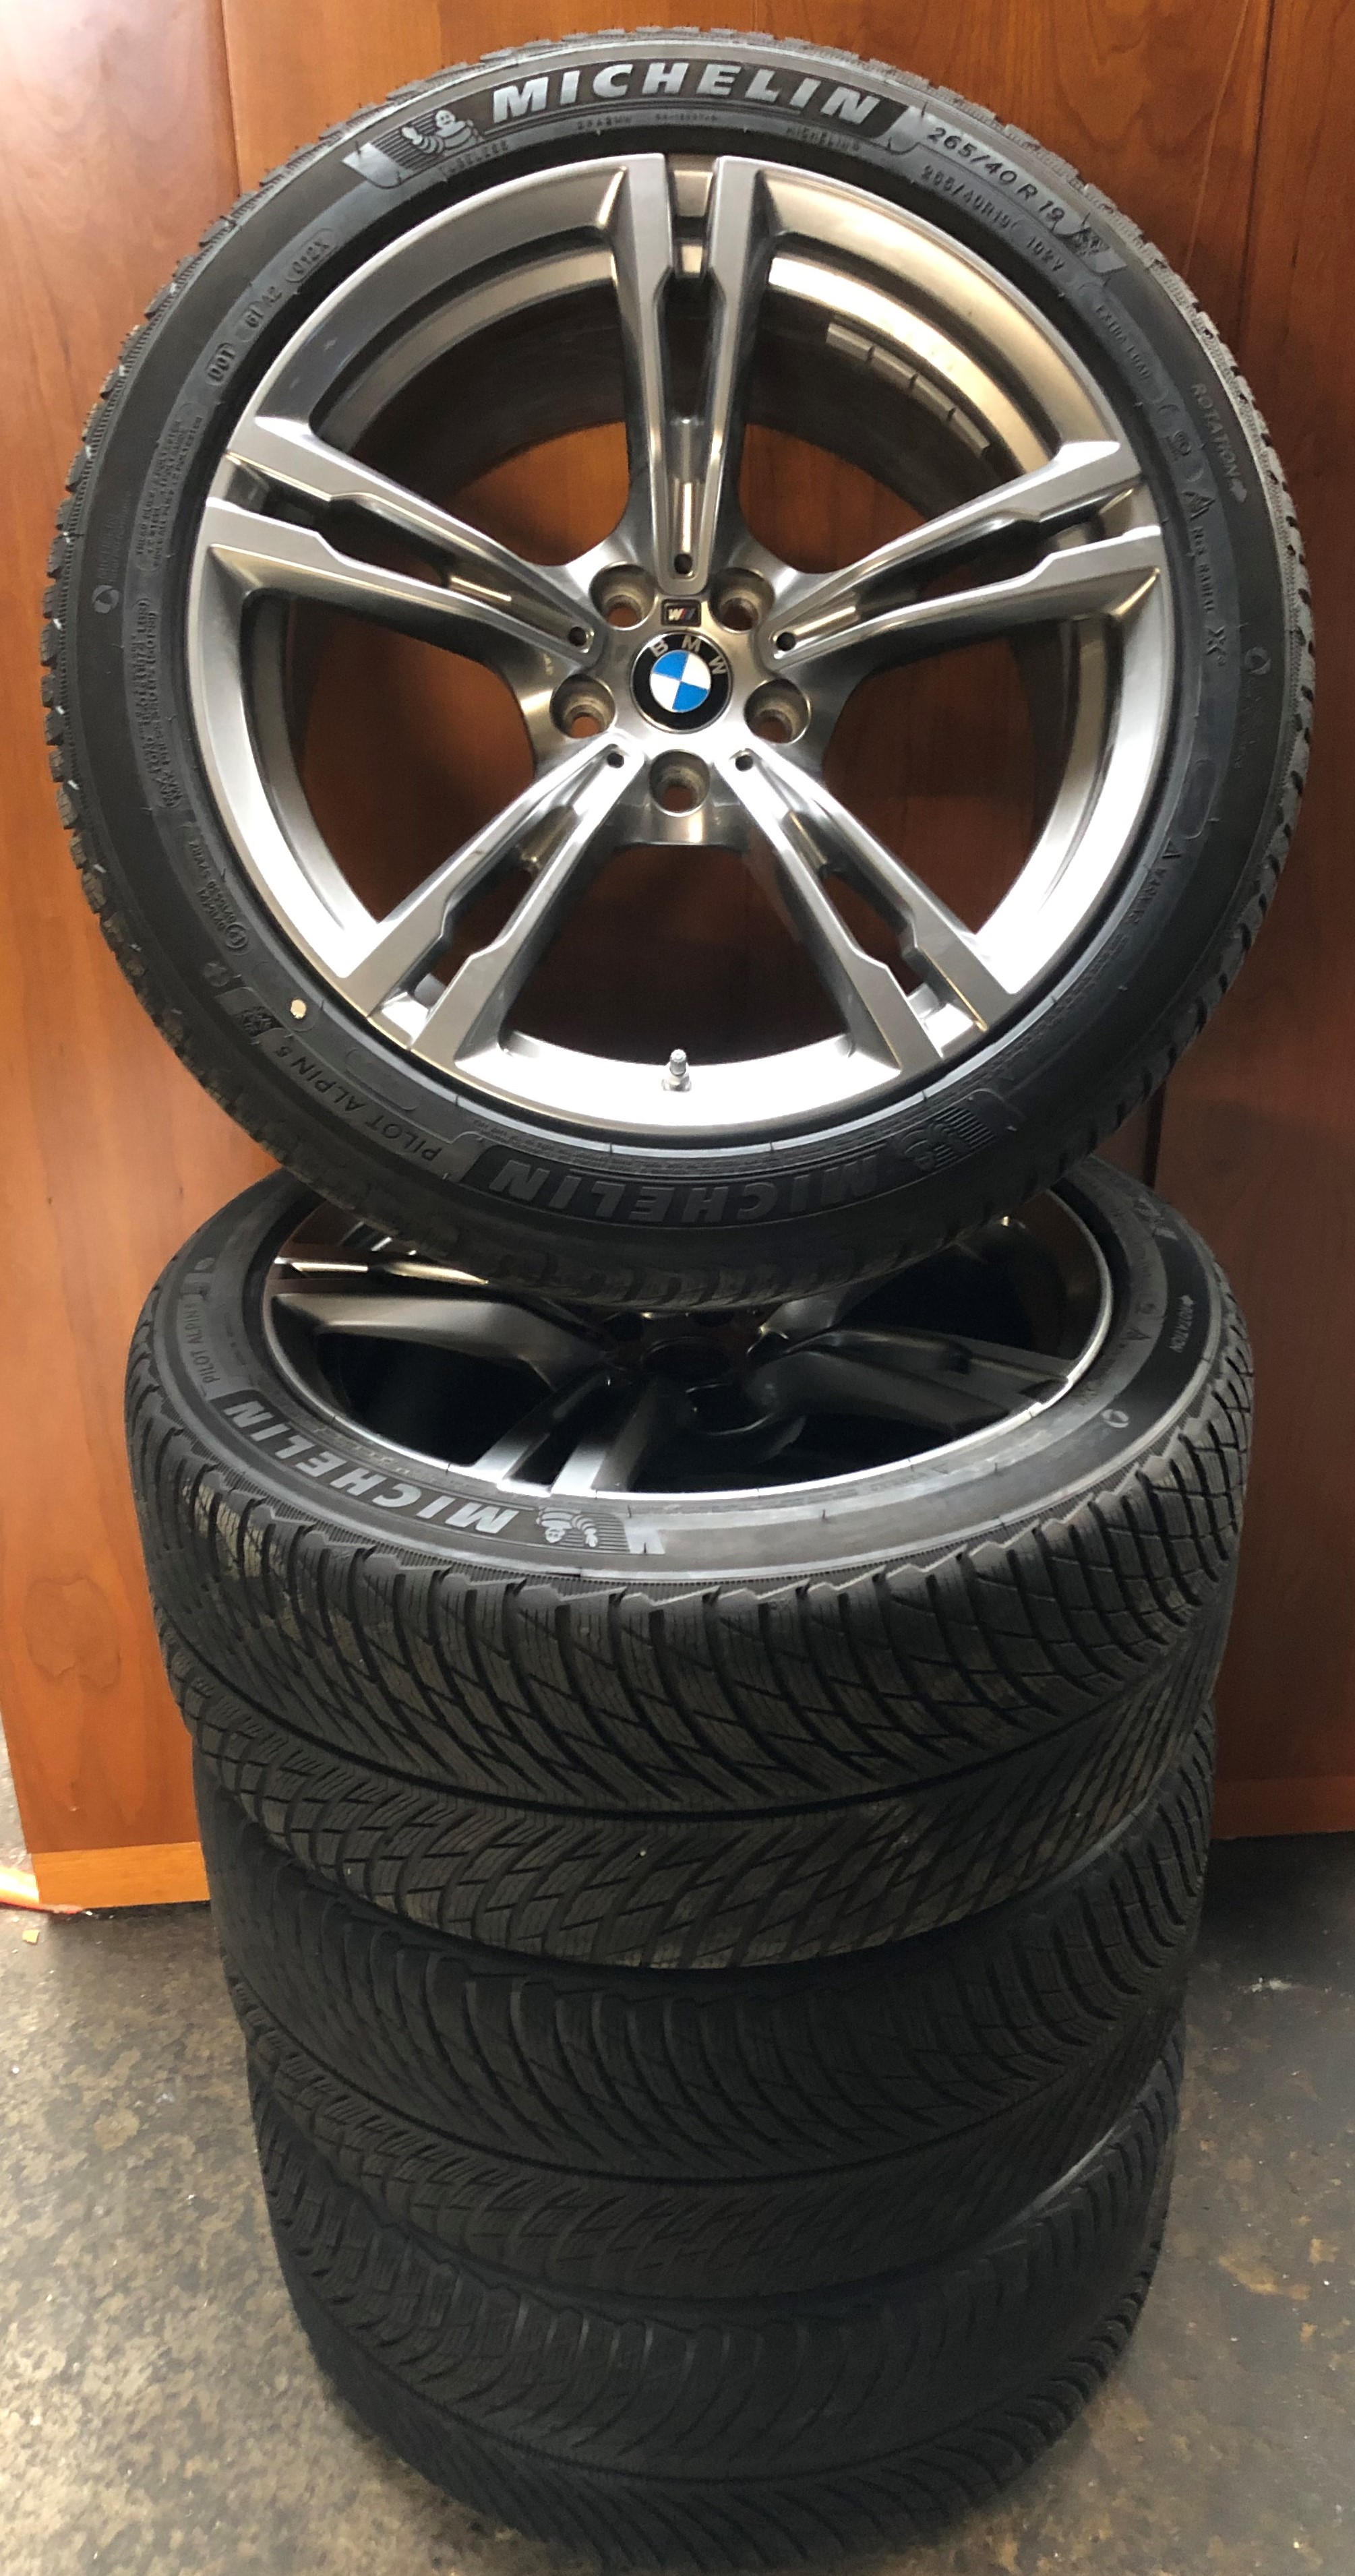 4 Orig BMW Winter Wheels Styling 705 M 265/40 R19 102V M5